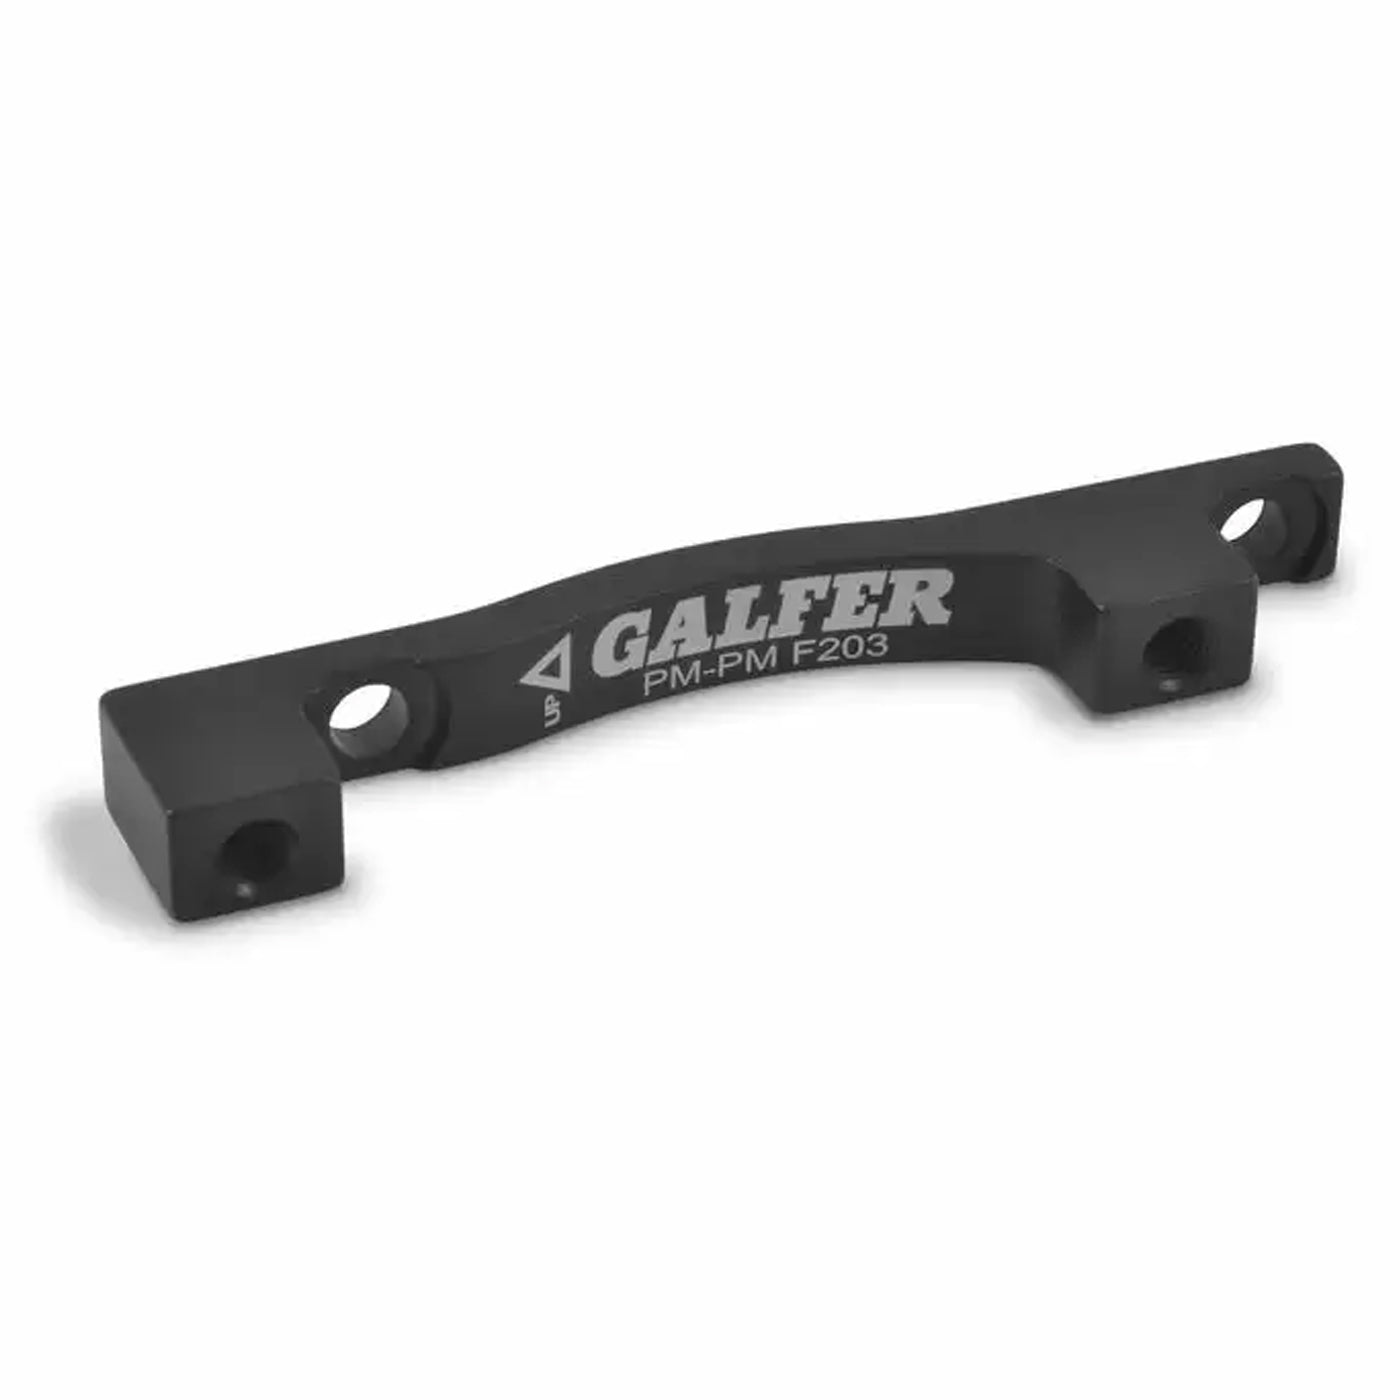 Galfer SB001 Disc Brake Mount Adapter 